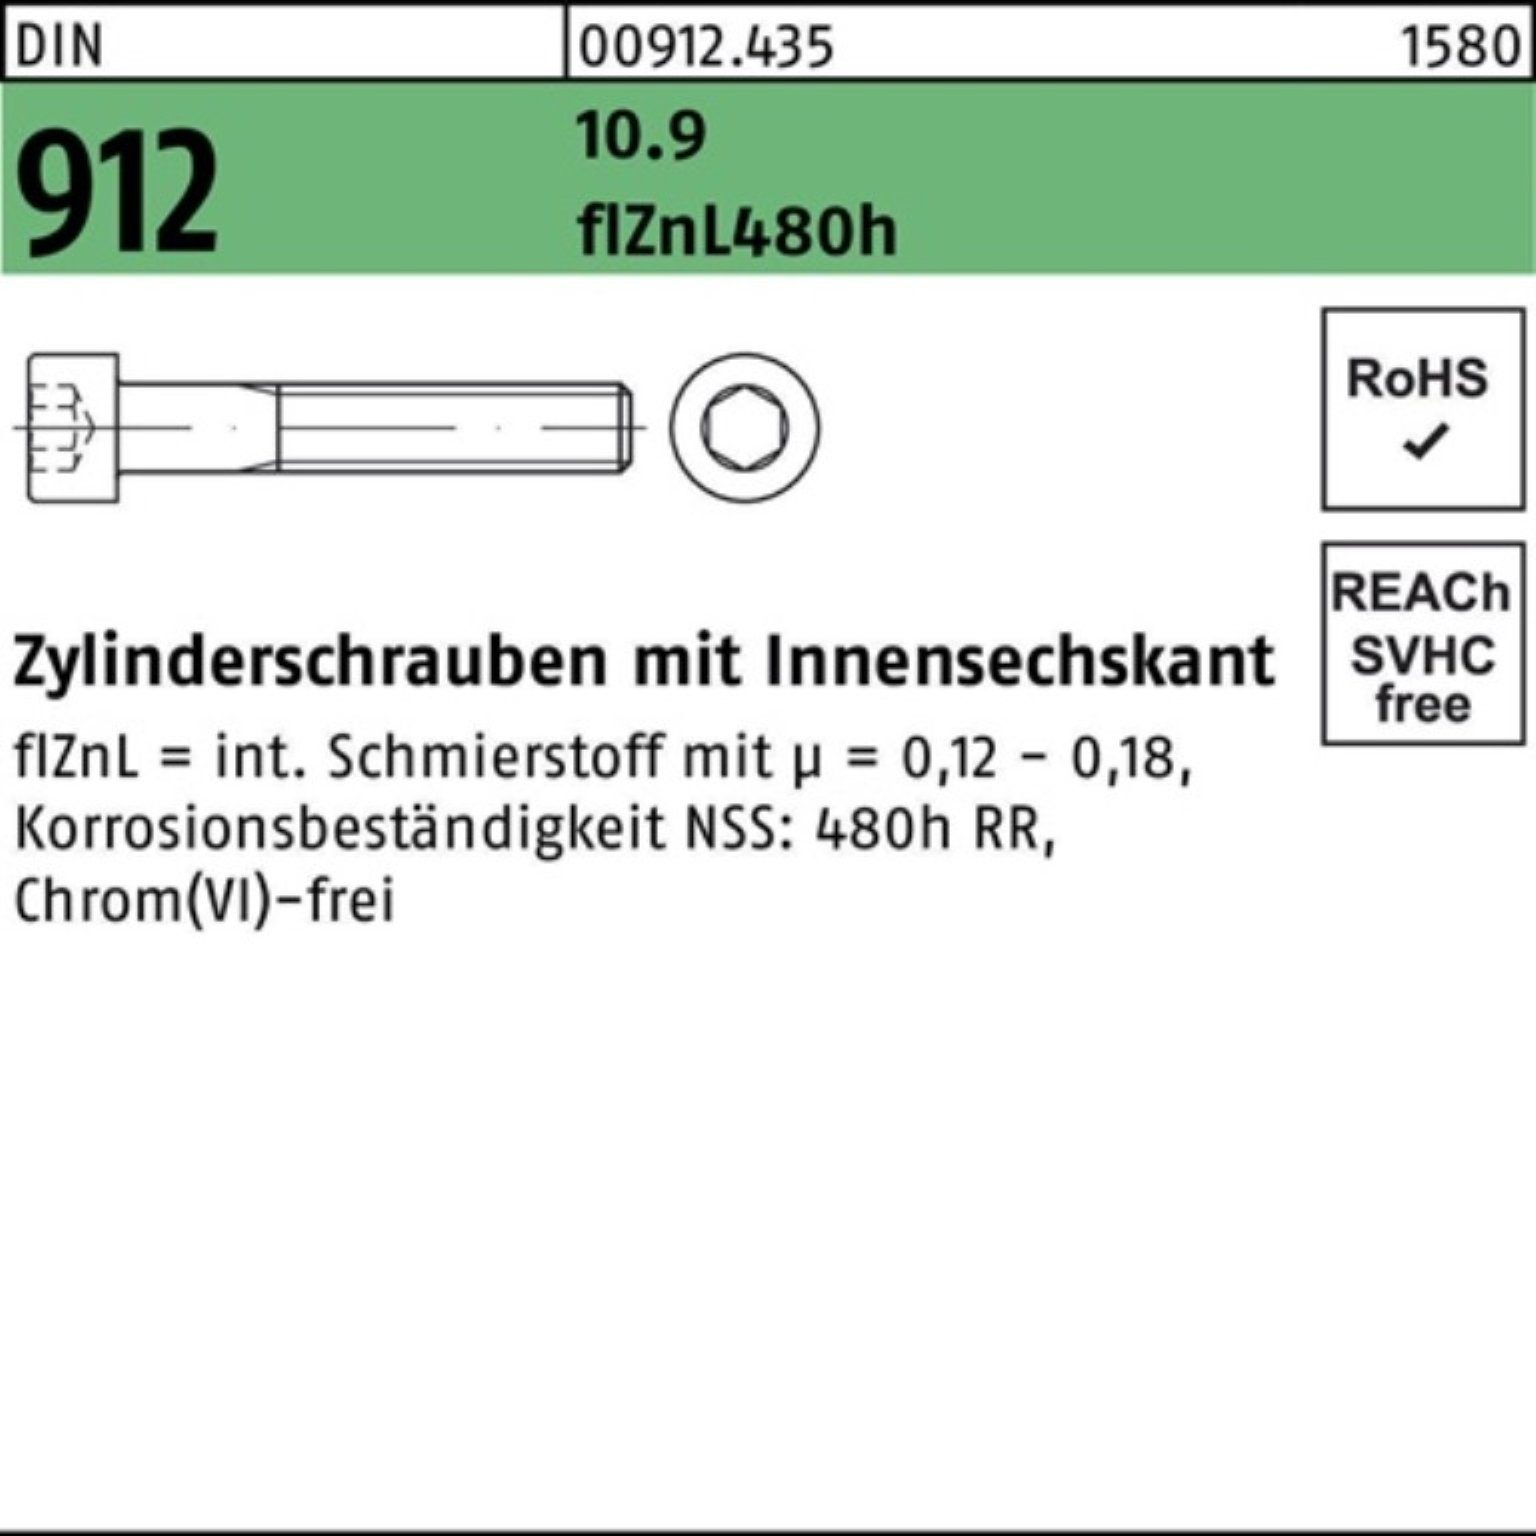 100er Pack Zylinderschraube M12x50 Innen-6kt DIN Zylinderschraube flZnL/nc/x/x Reyher 10.9 912